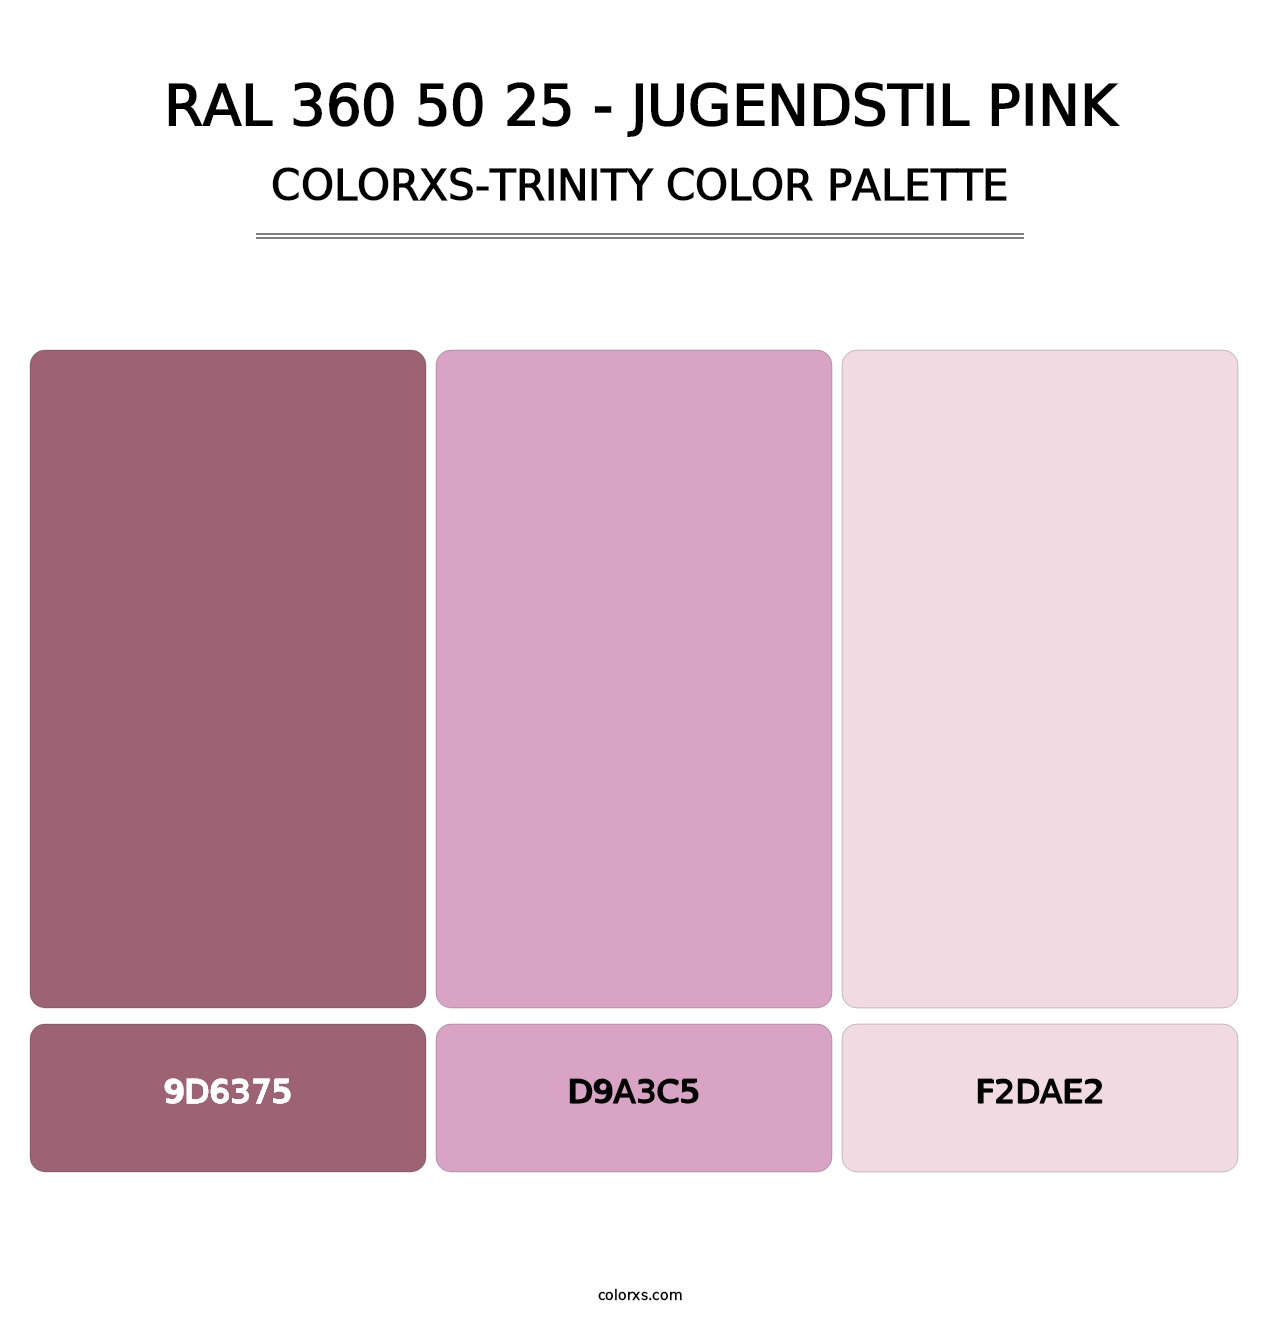 RAL 360 50 25 - Jugendstil Pink - Colorxs Trinity Palette